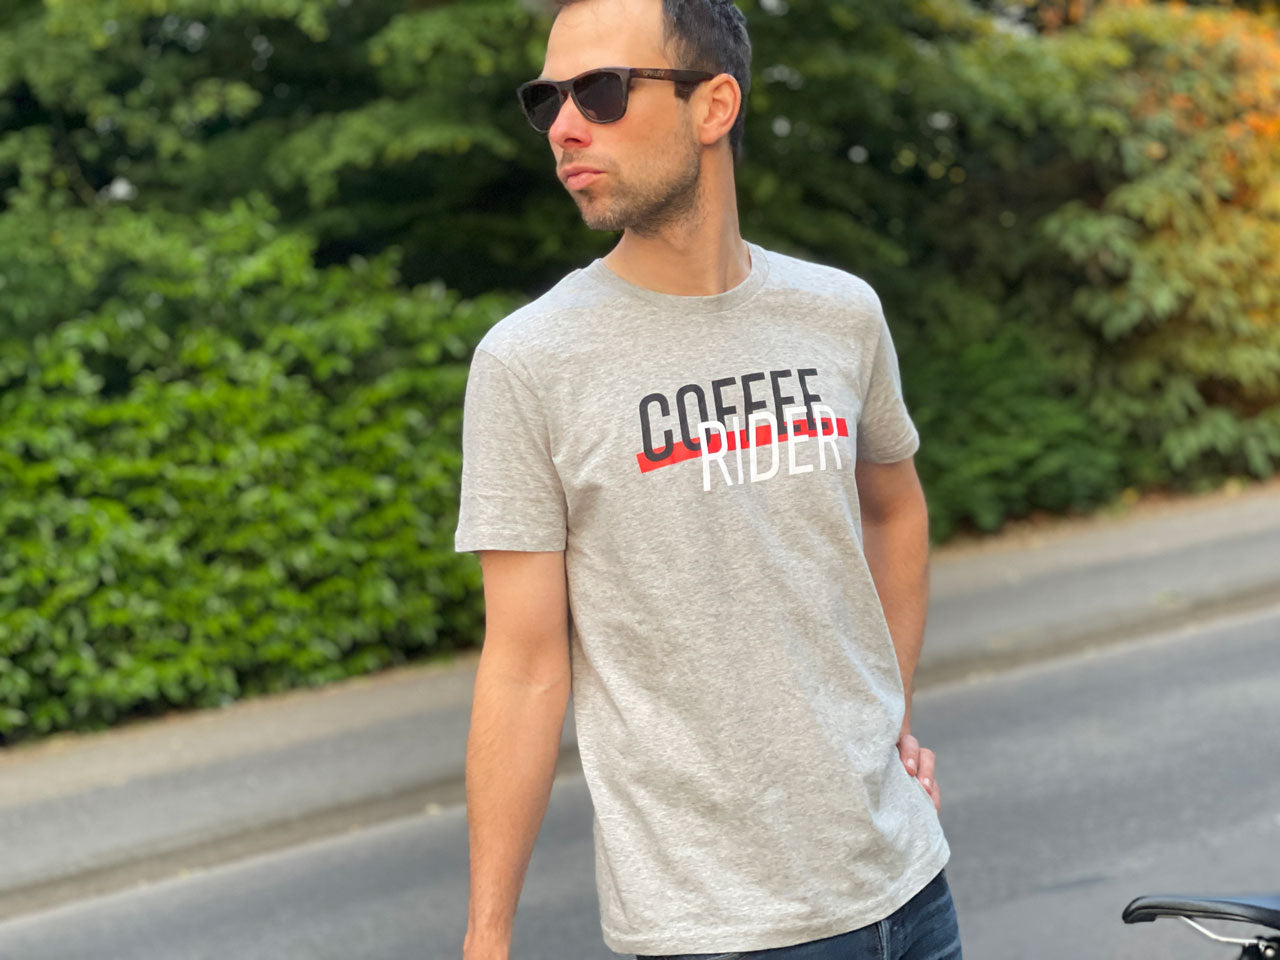 Eine Person steht mit einem grauen T-Shirt und der Aufschrift Coffee Rider vor einer Hecke